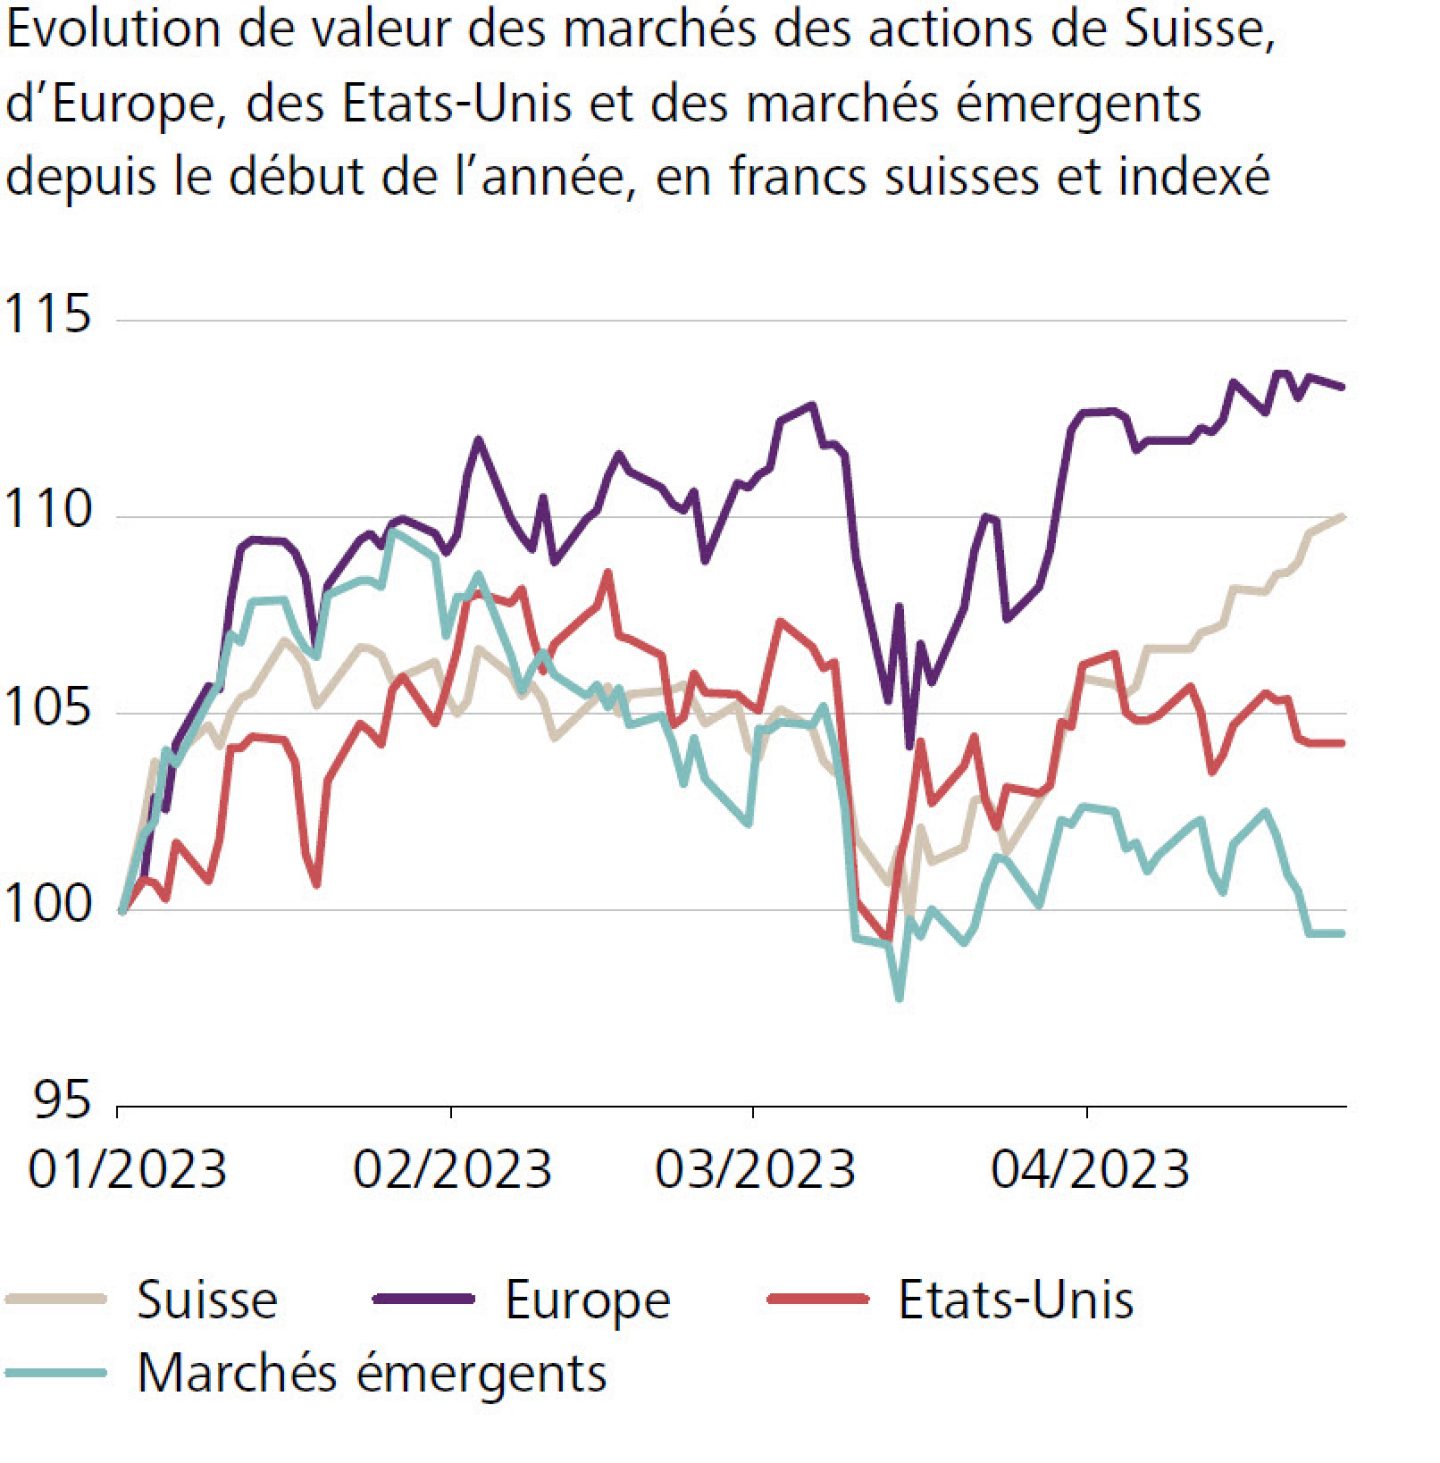 Evolution de valeur des marchés des actions de Suisse, d'Europe, des Etats-Unis et des marchés émergents depuis le début de l'année, en francs suisses et indexé